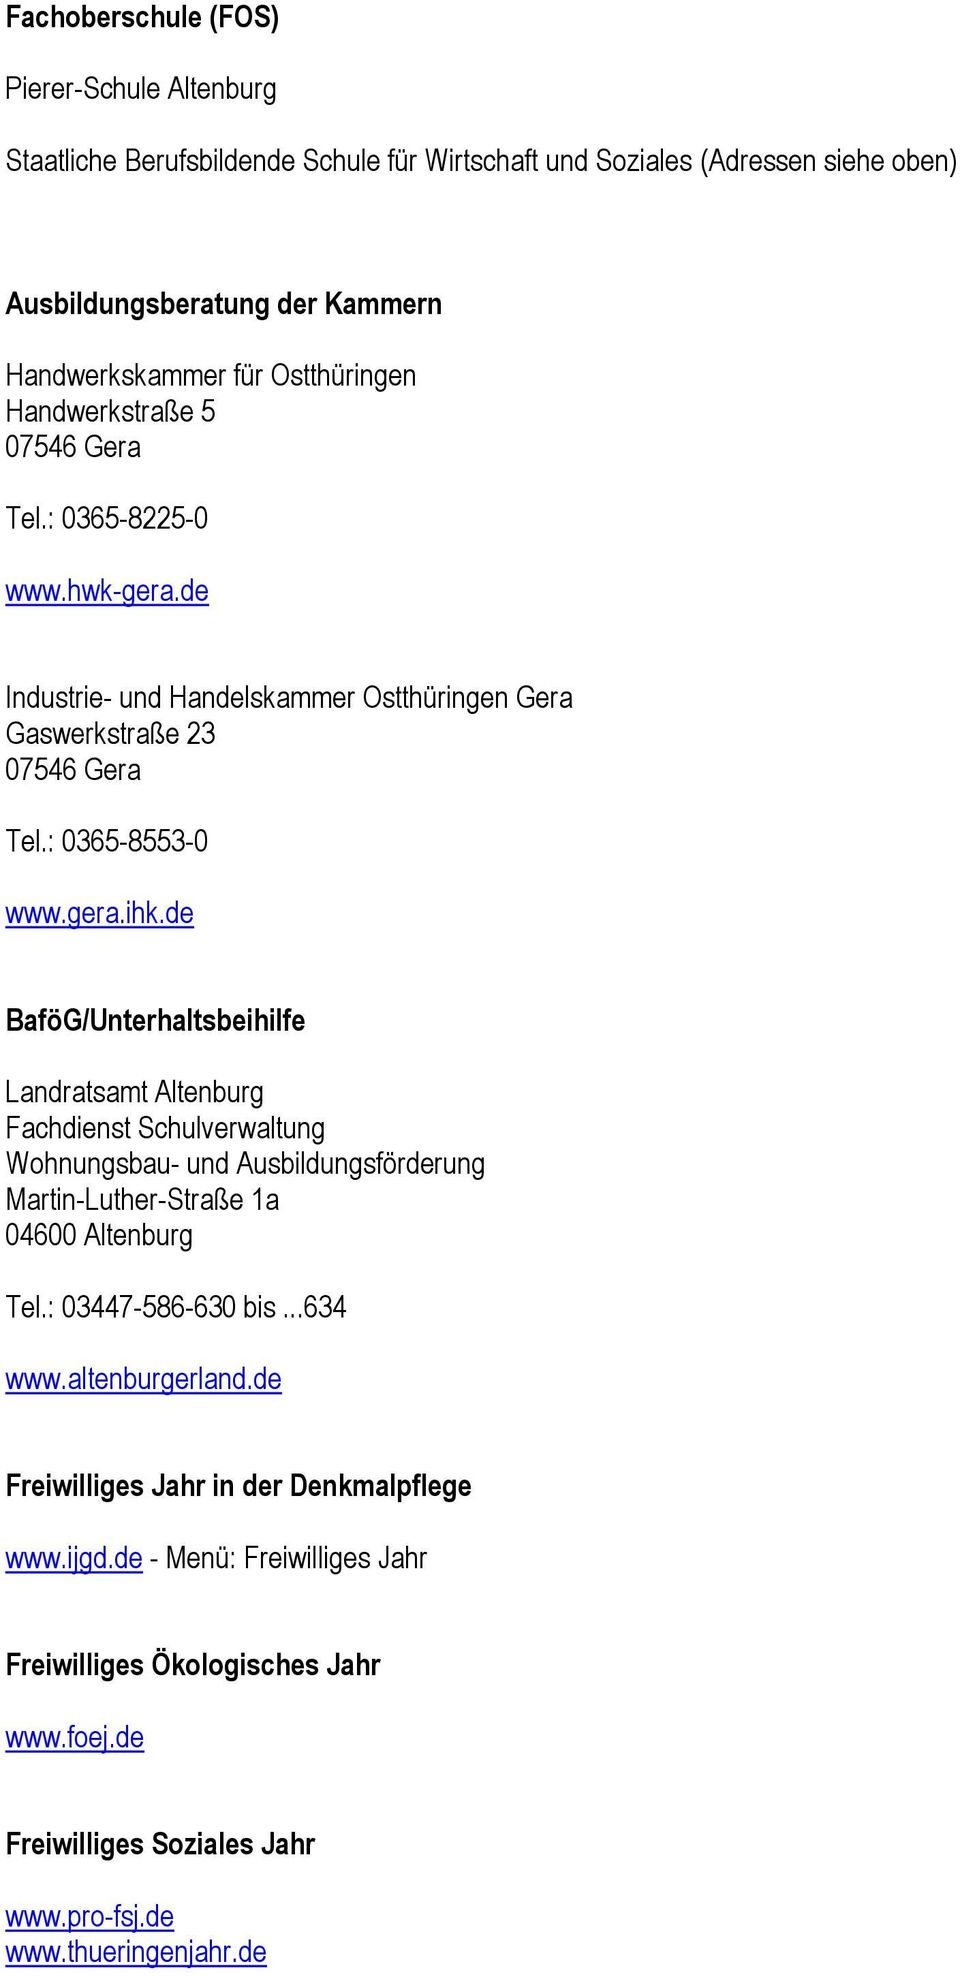 de BaföG/Unterhaltsbeihilfe Landratsamt Altenburg Fachdienst Schulverwaltung Wohnungsbau- und Ausbildungsförderung Martin-Luther-Straße 1a Tel.: 03447-586-630 bis...634 www.